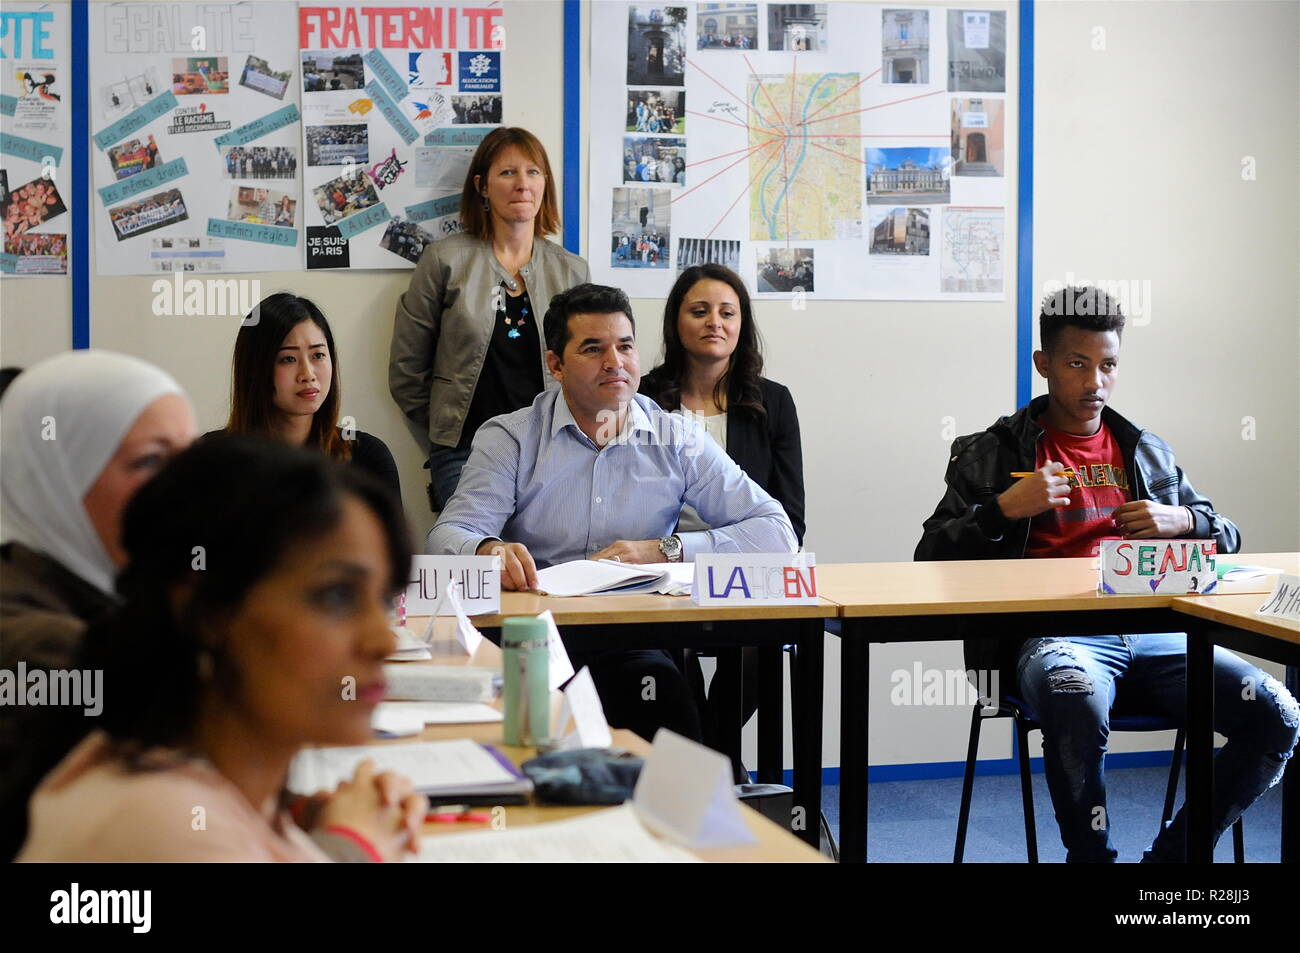 Atelier de formation à l'assister les réfugiés , Lyon, France Banque D'Images